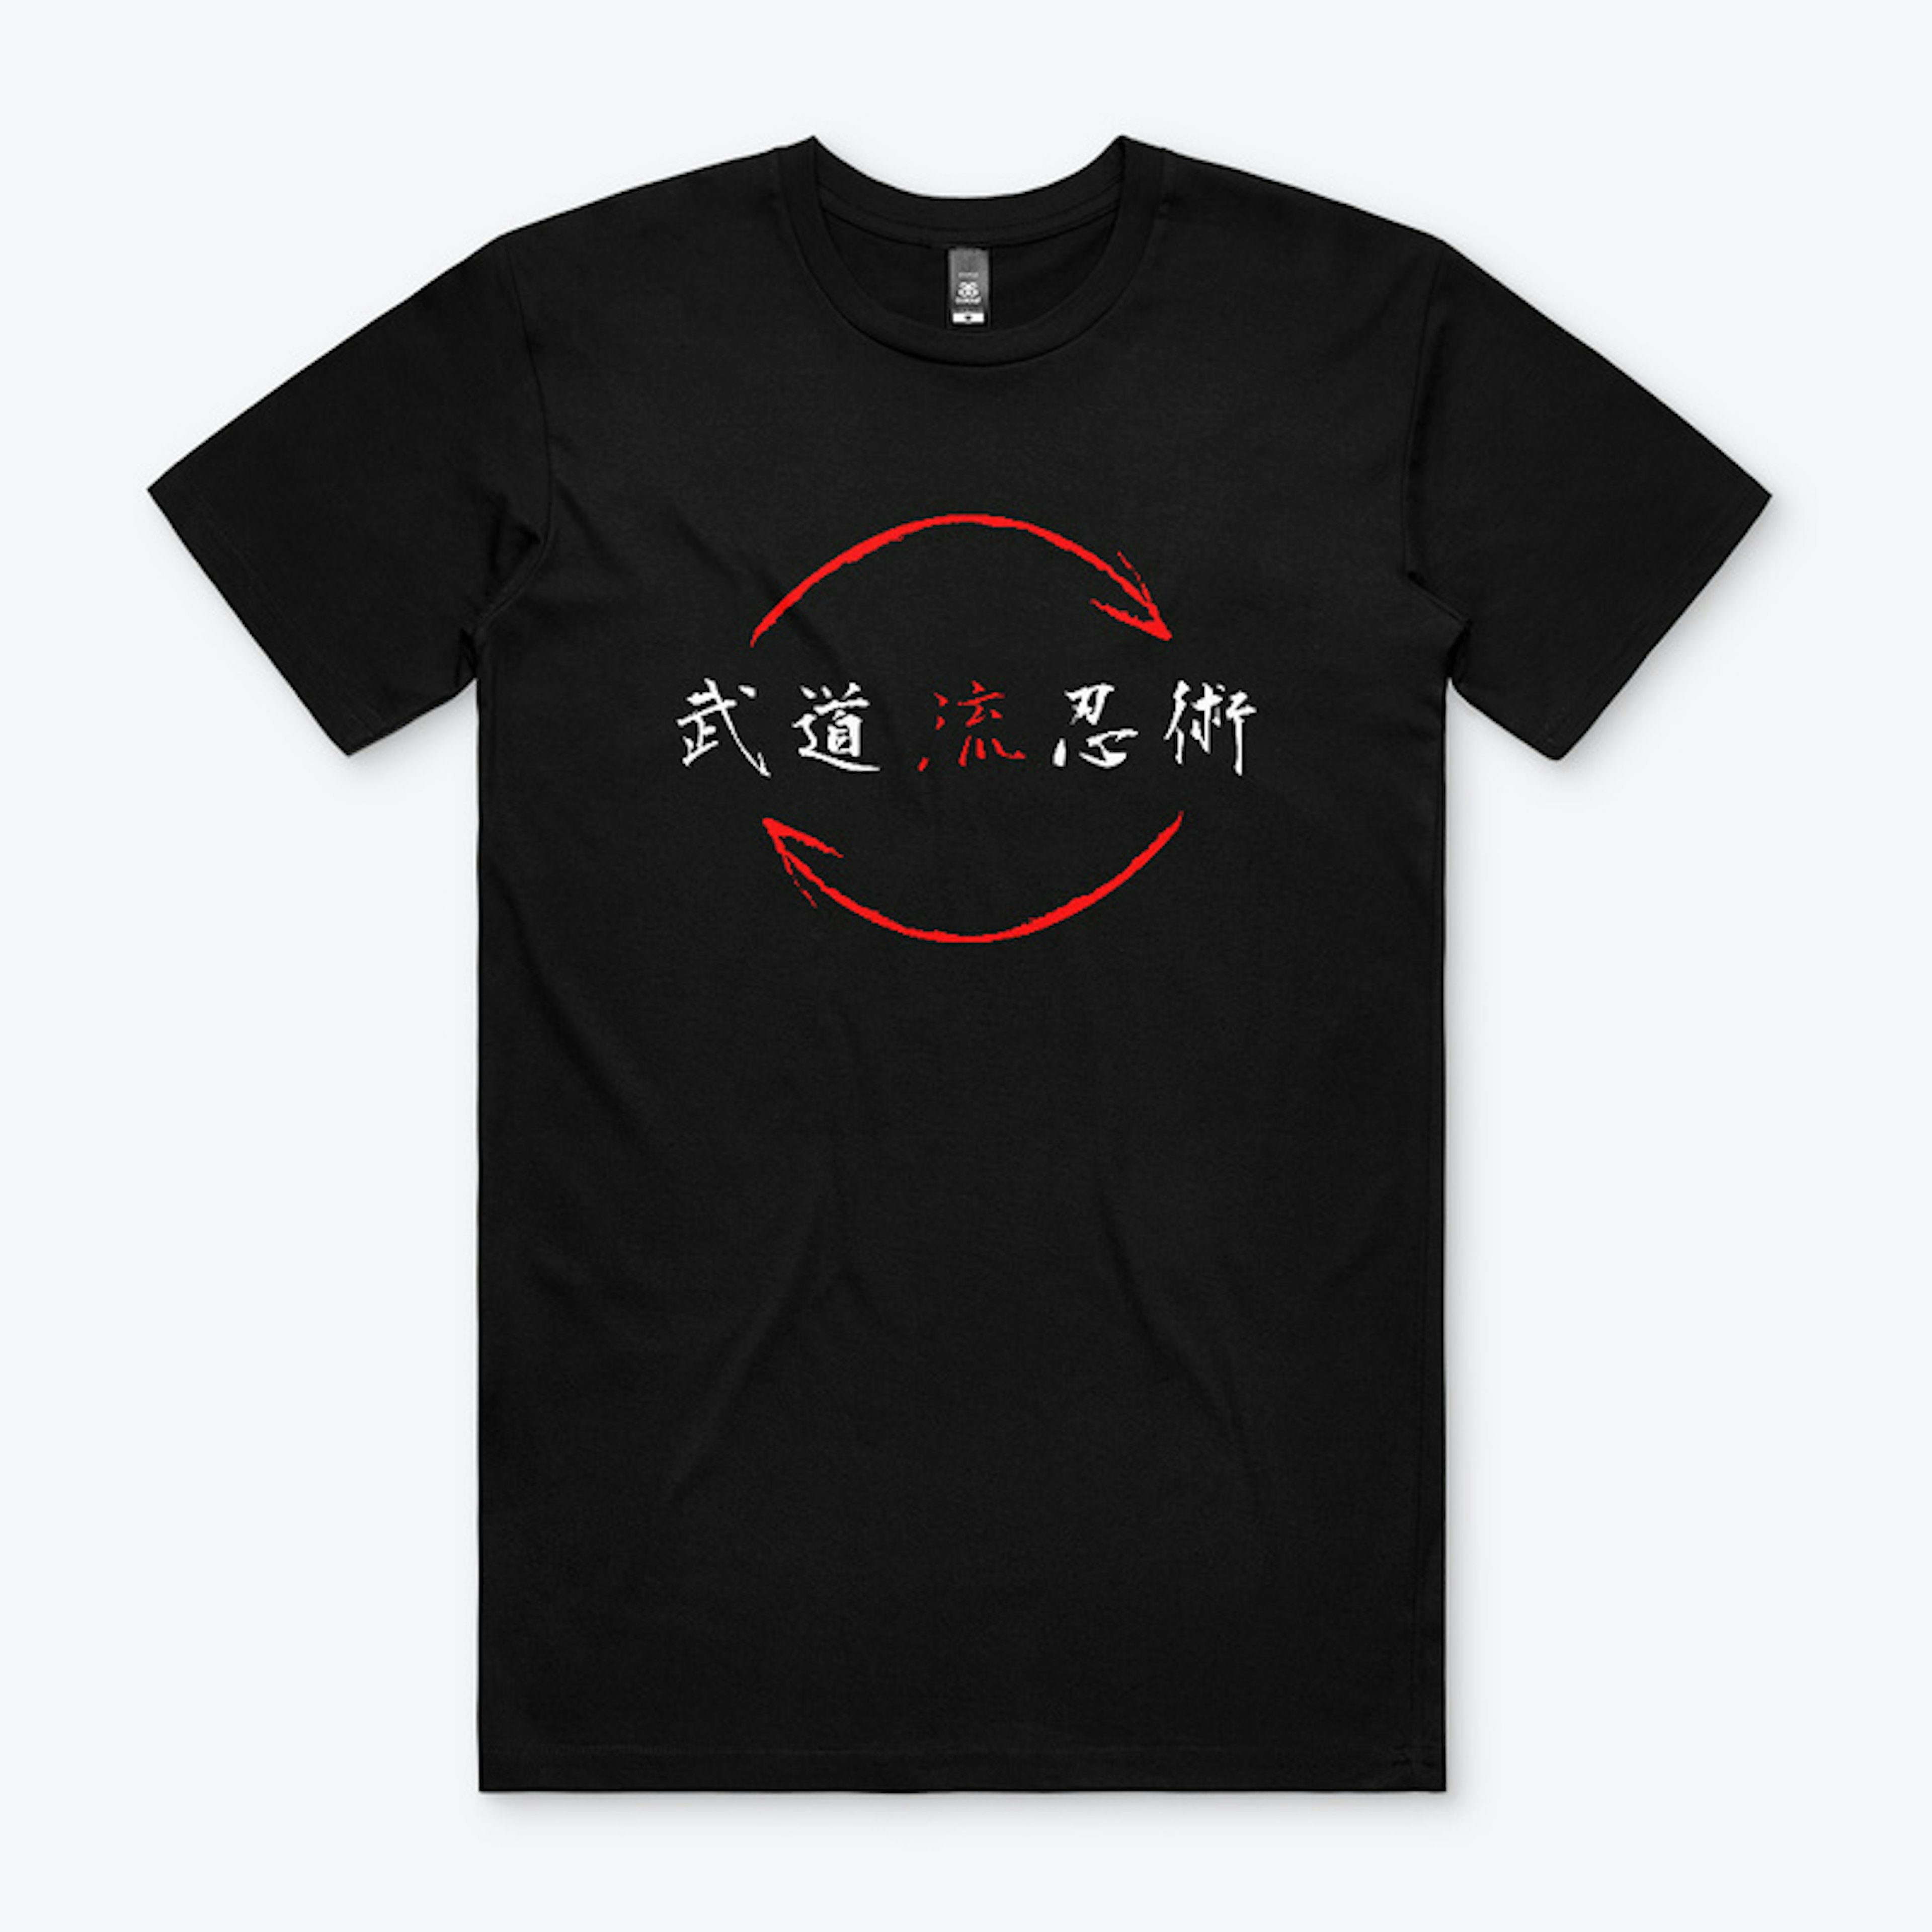 Budo Ryu Ninjutsu "Balance" Men's Shirt